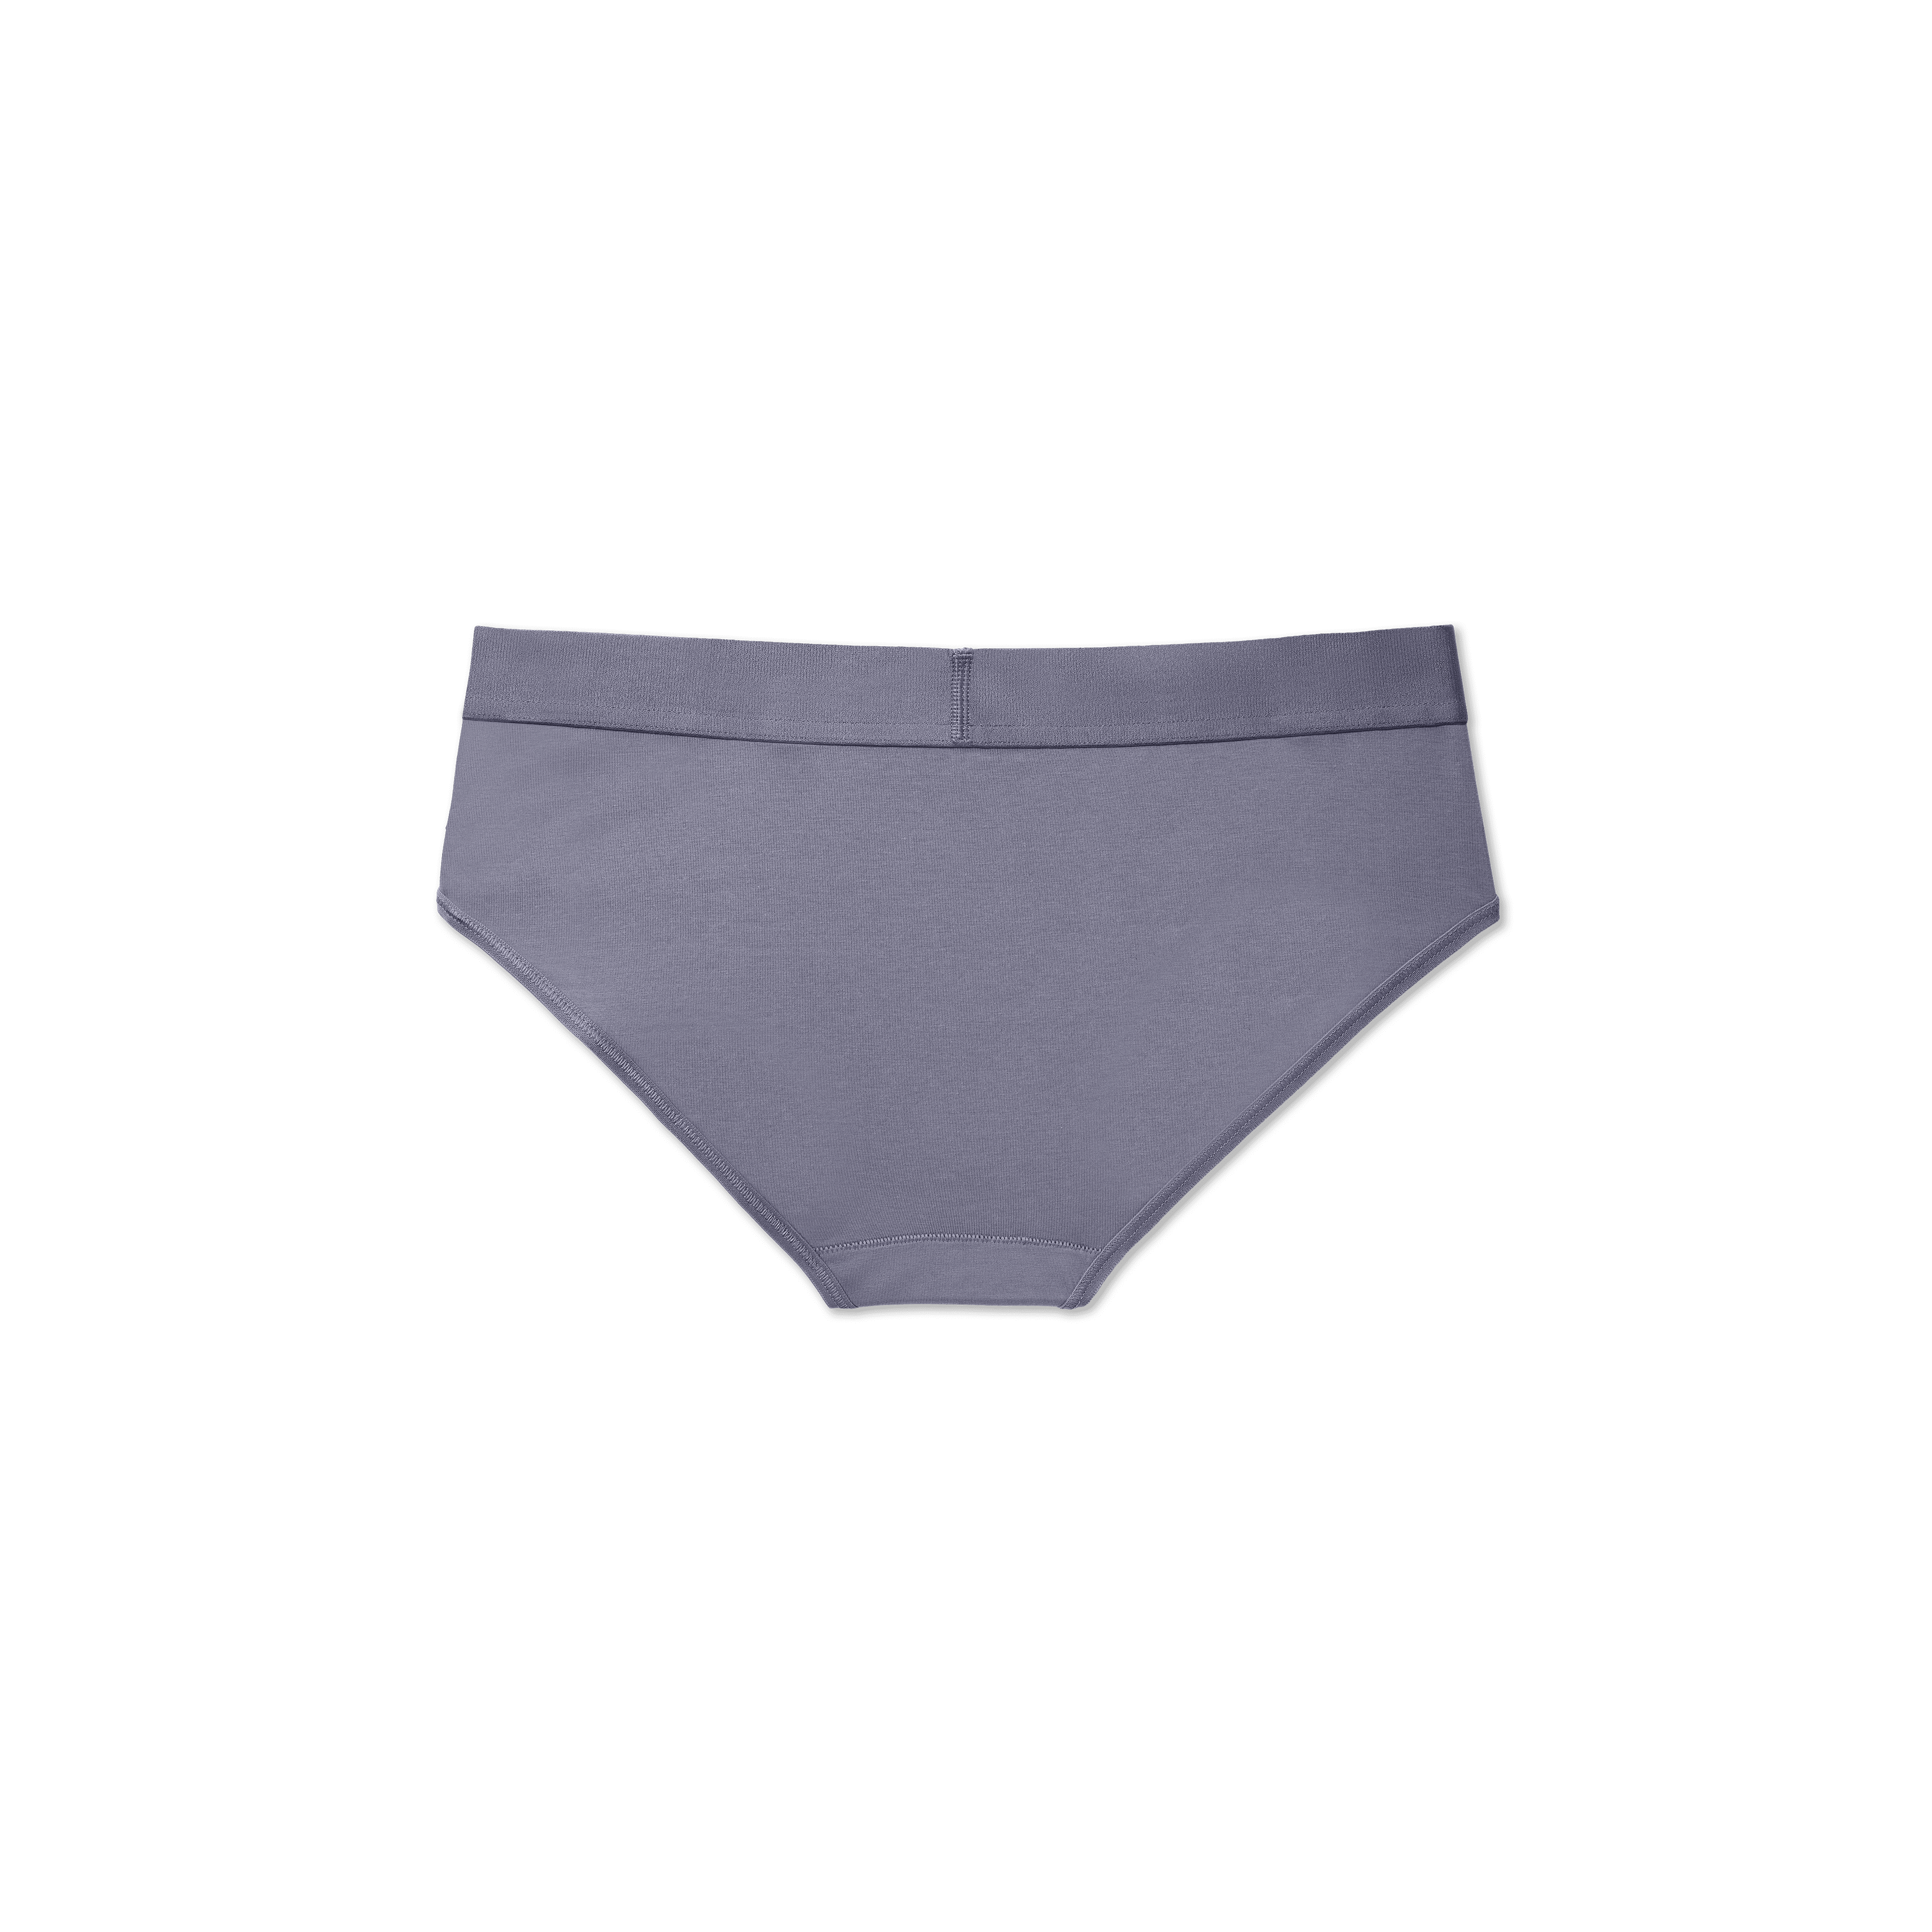 Bombas Women's Cotton Modal Blend Bikini Underwear - Black - XS - ShopStyle  Panties